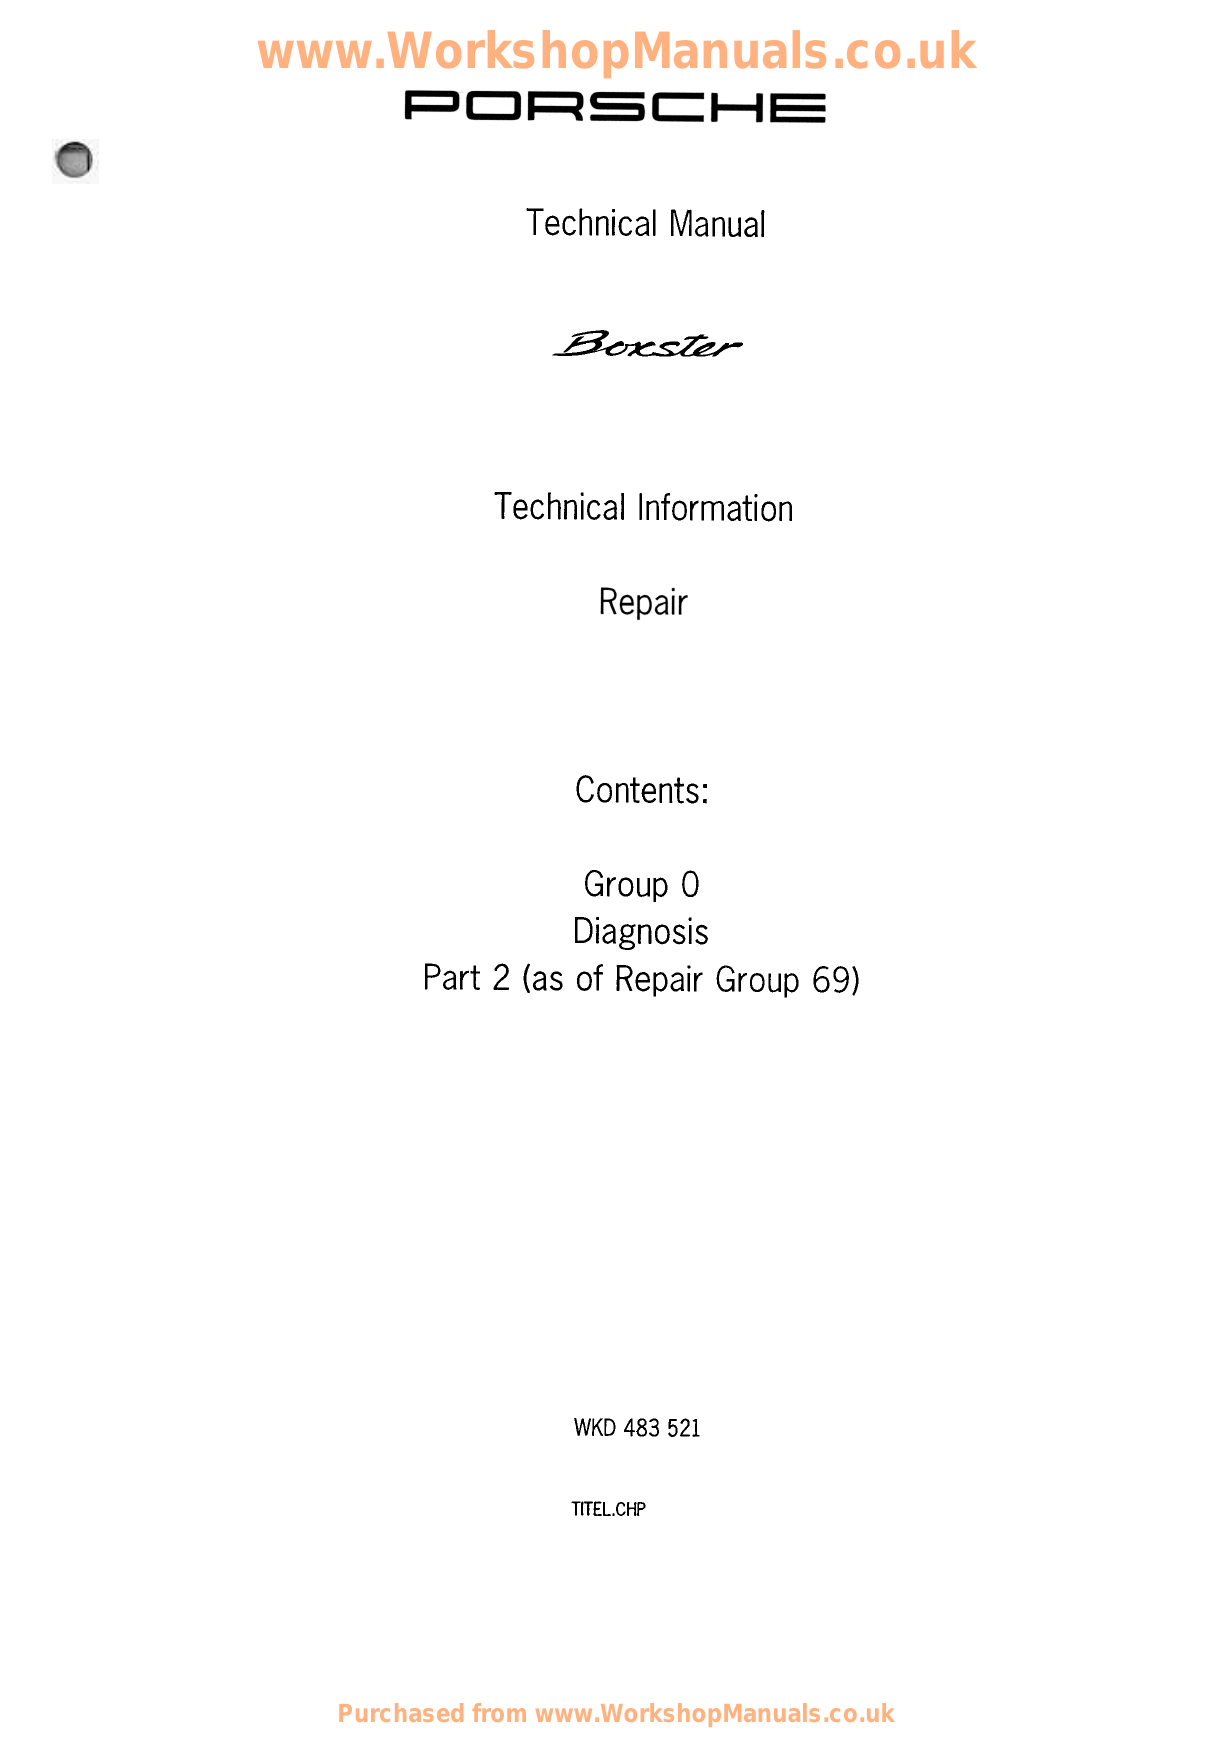 1996-2004 Porsche 986 Boxster shop manual Preview image 6